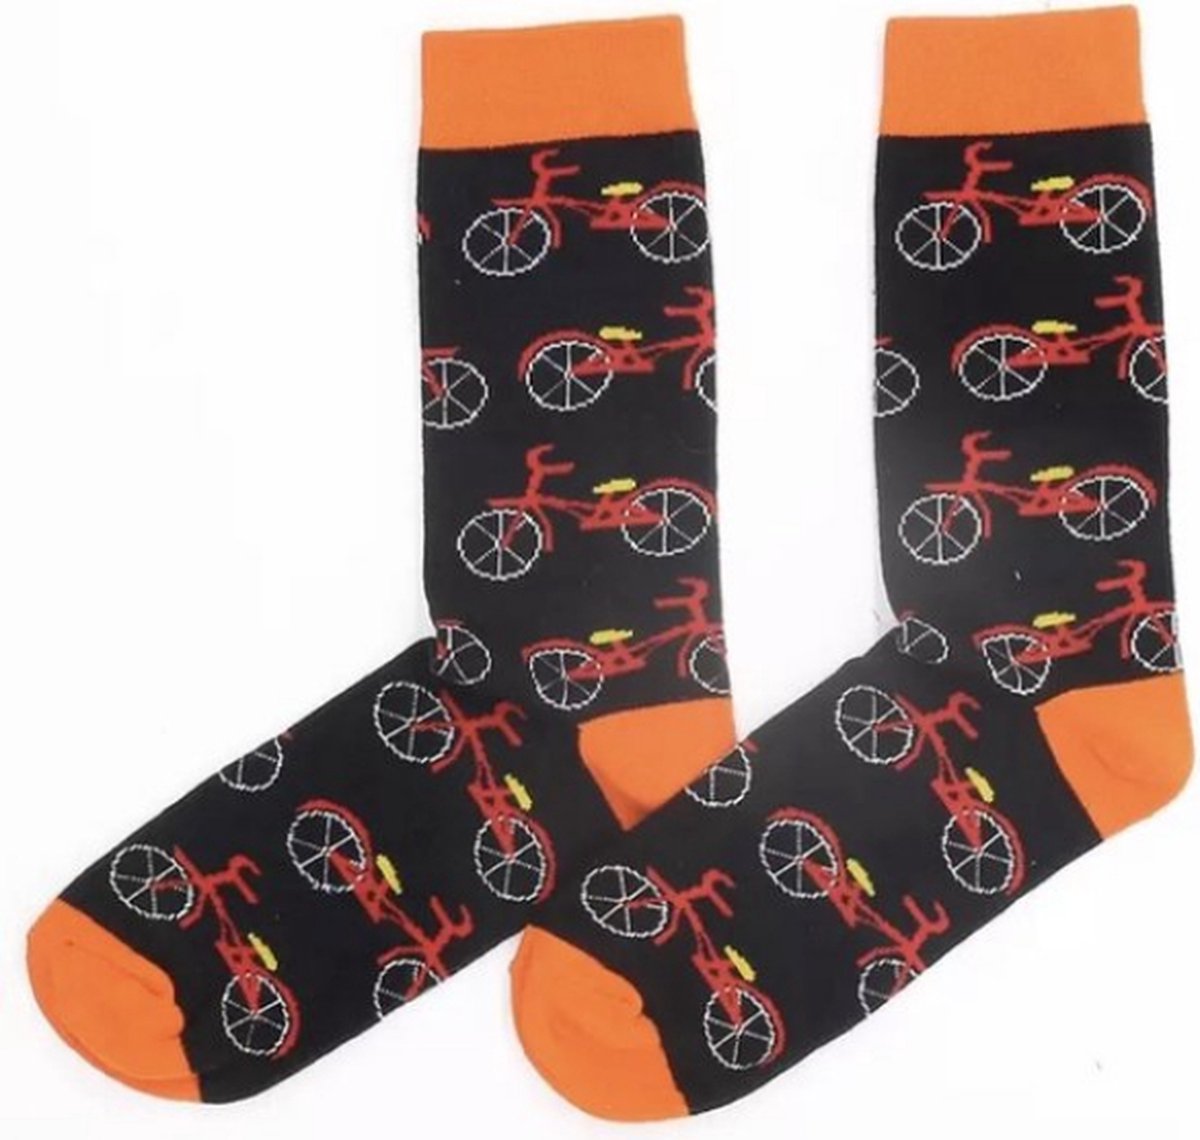 Sokken | Sokken met fiets | Zwart | Oranje | 38-43 Akyol - Afscheidscadeau - heren sokken maat 38-43 - cadeau voor de leraar - leraar - meester - afscheidscadeau leraar - fiets sokken voor heren - sokken met fiets erop - wielrenner sokken